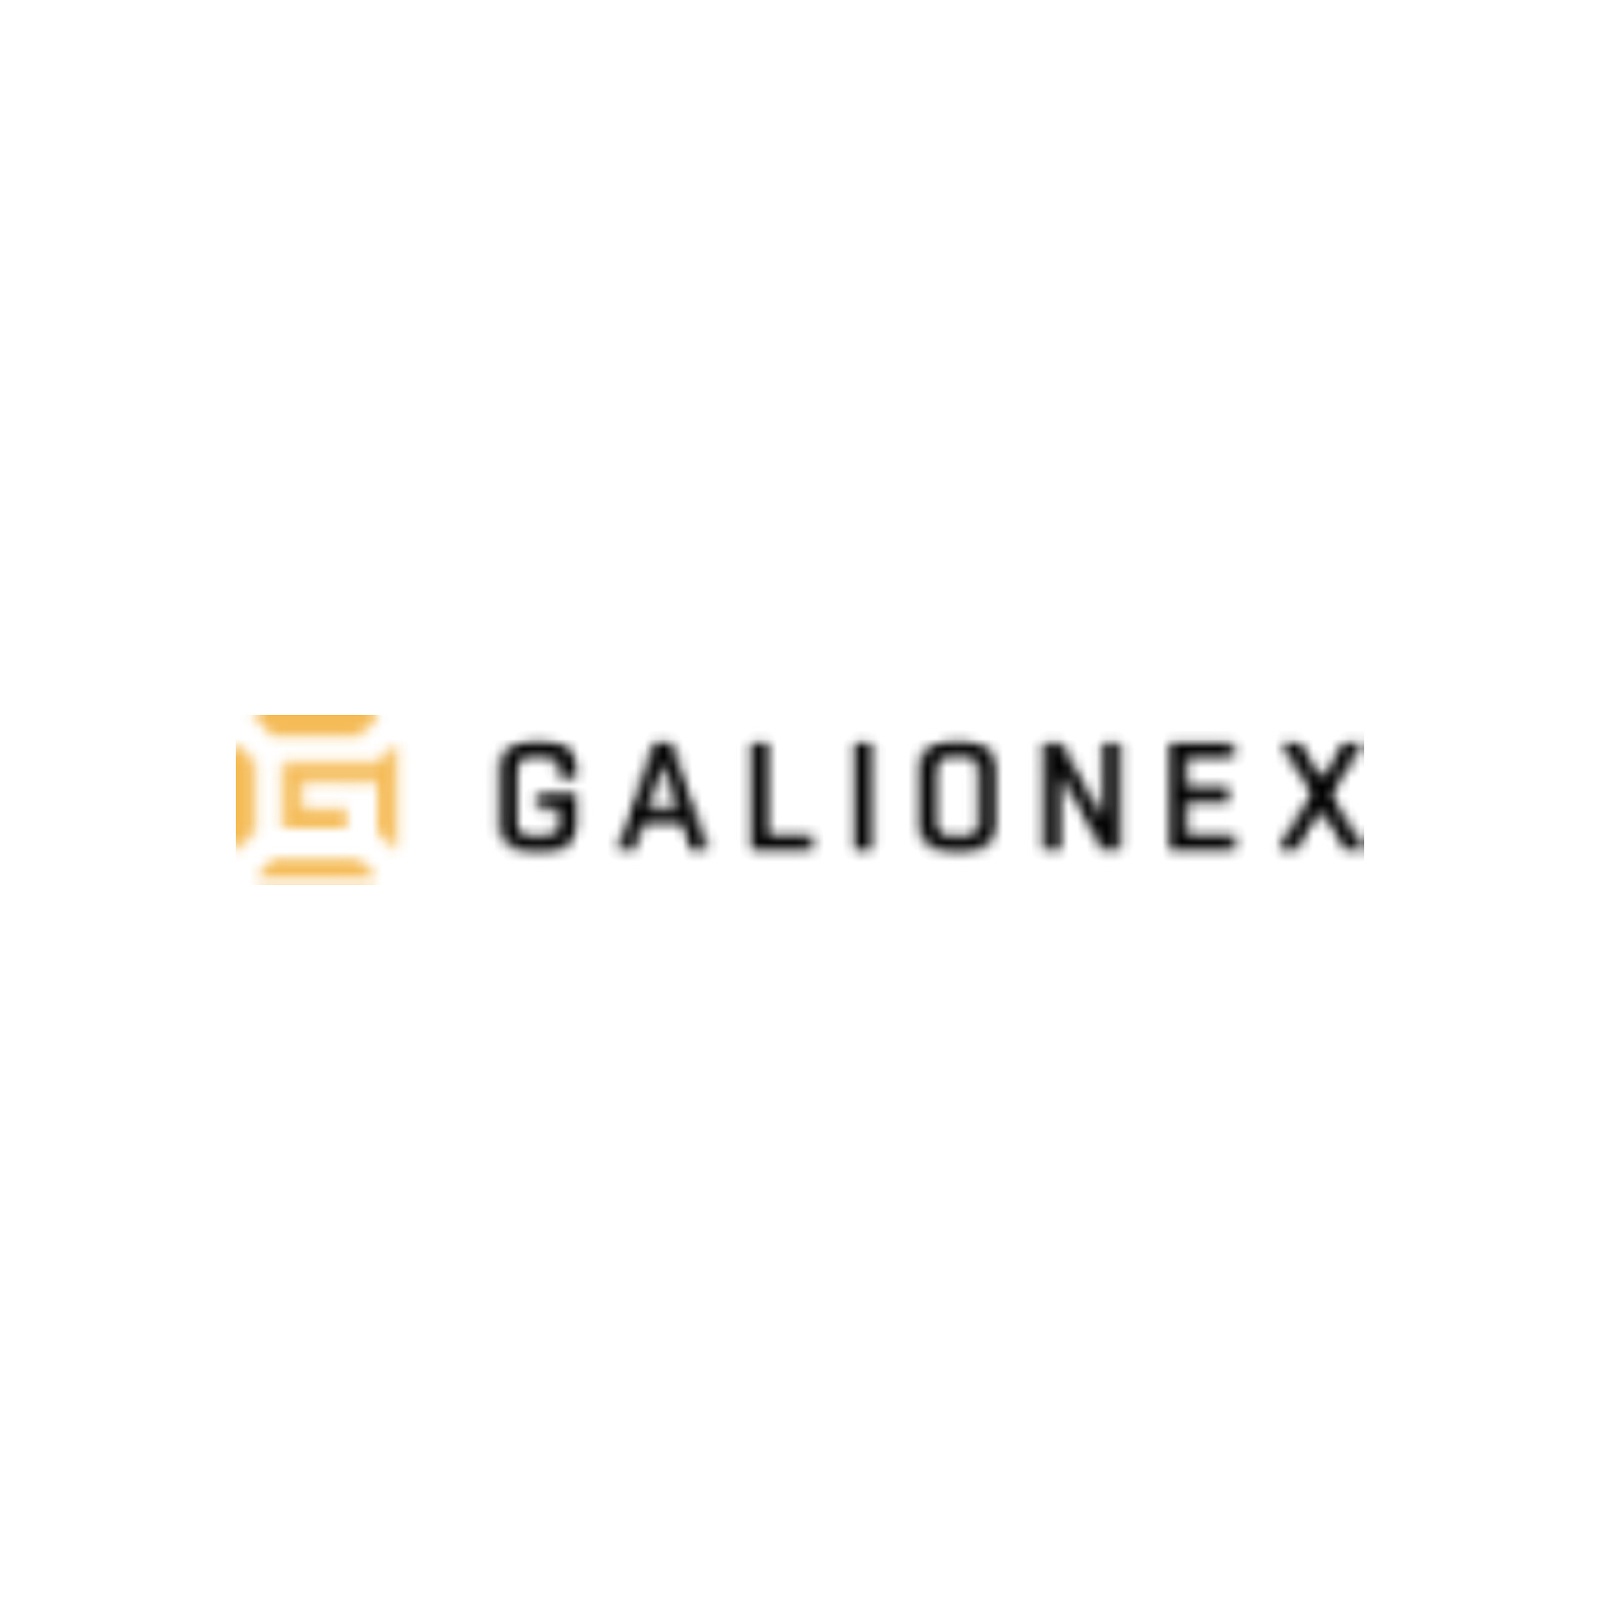 Galionex